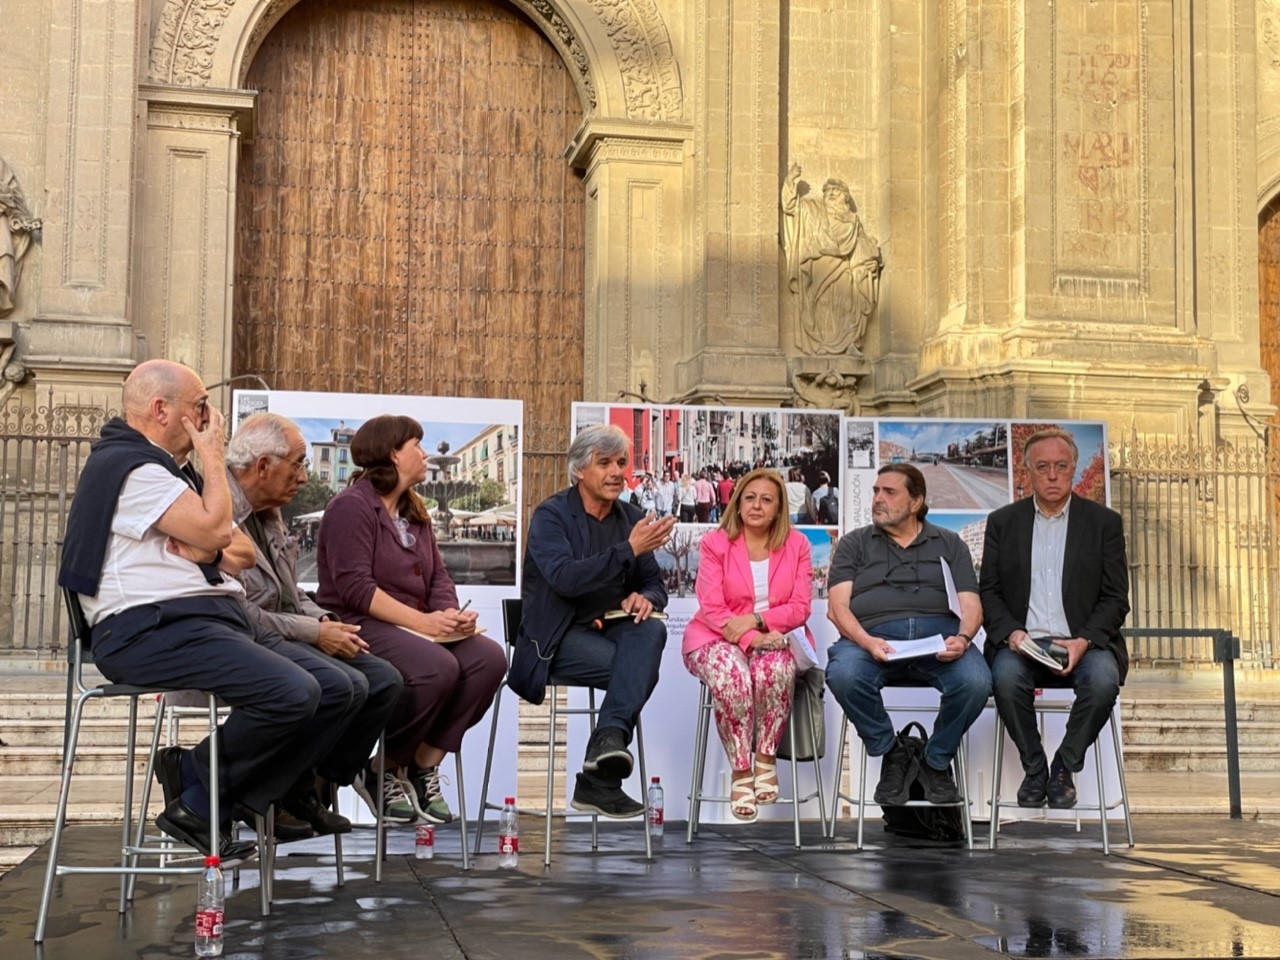 Participantes de la jornada en torno a la ciudad que queremos en la plaza de las Pasiegas, frente a la Catedral de Granada.